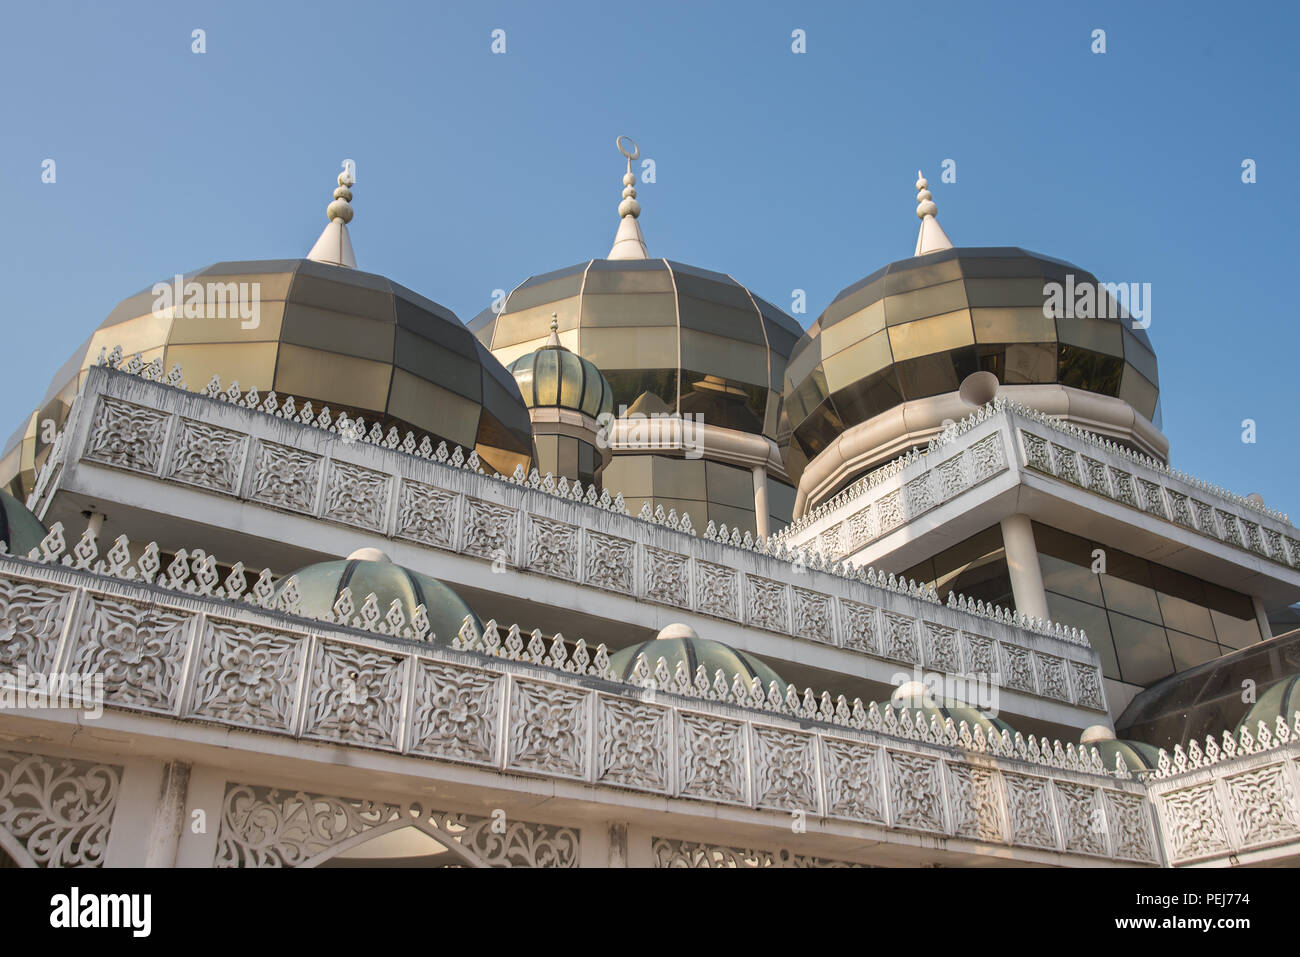 Mosquée de cristal ou Masjid Kristal, Terengganu, Malaisie Banque D'Images